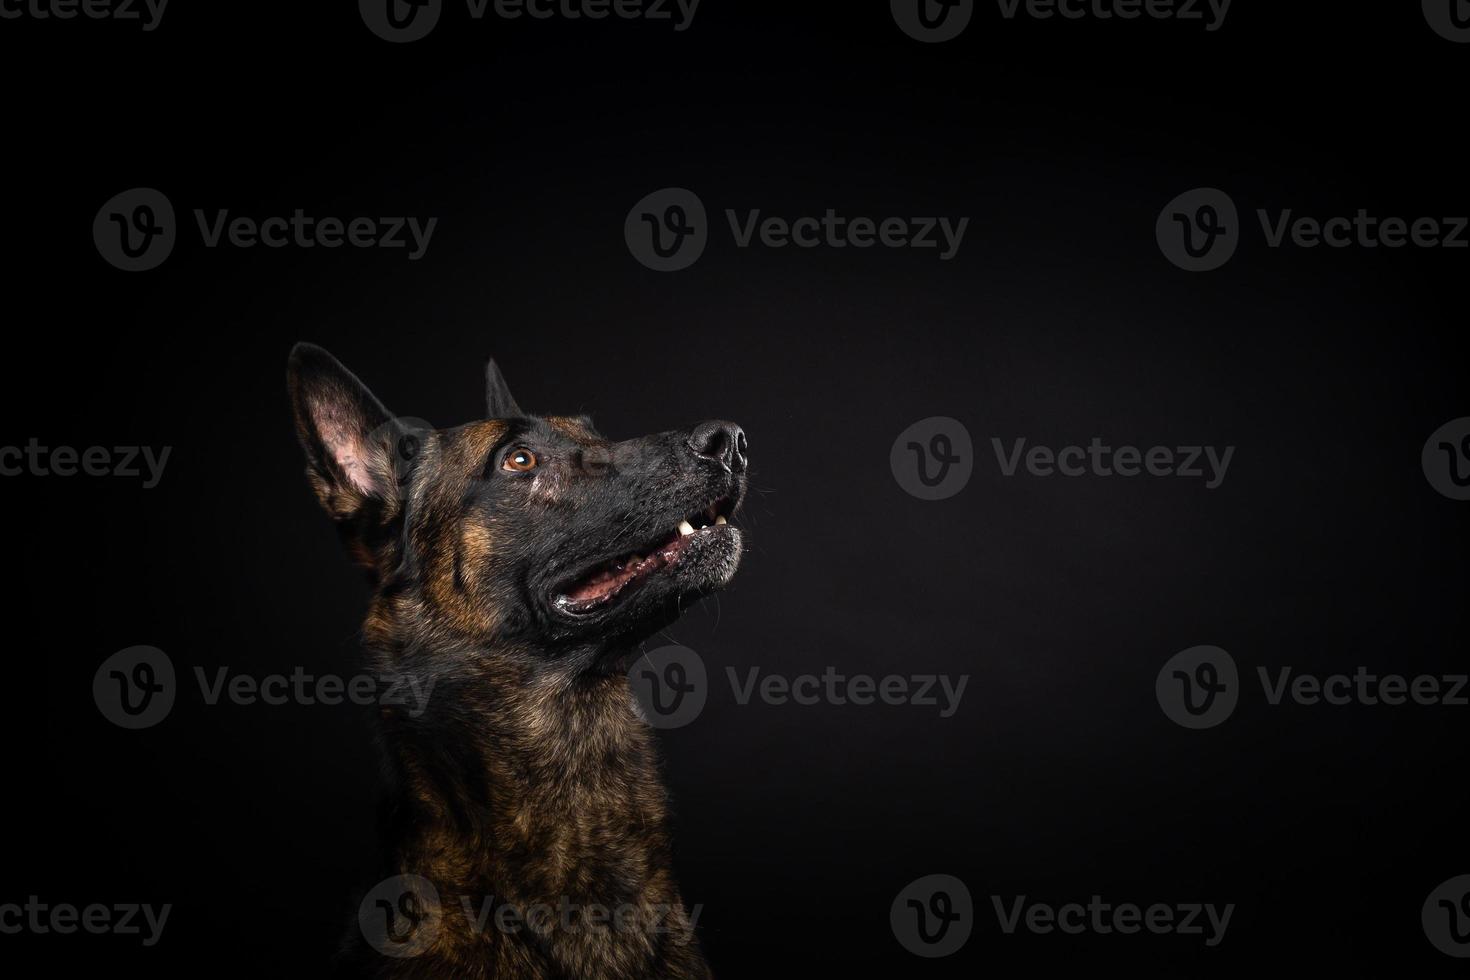 retrato de un perro pastor belga sobre un fondo negro aislado. foto